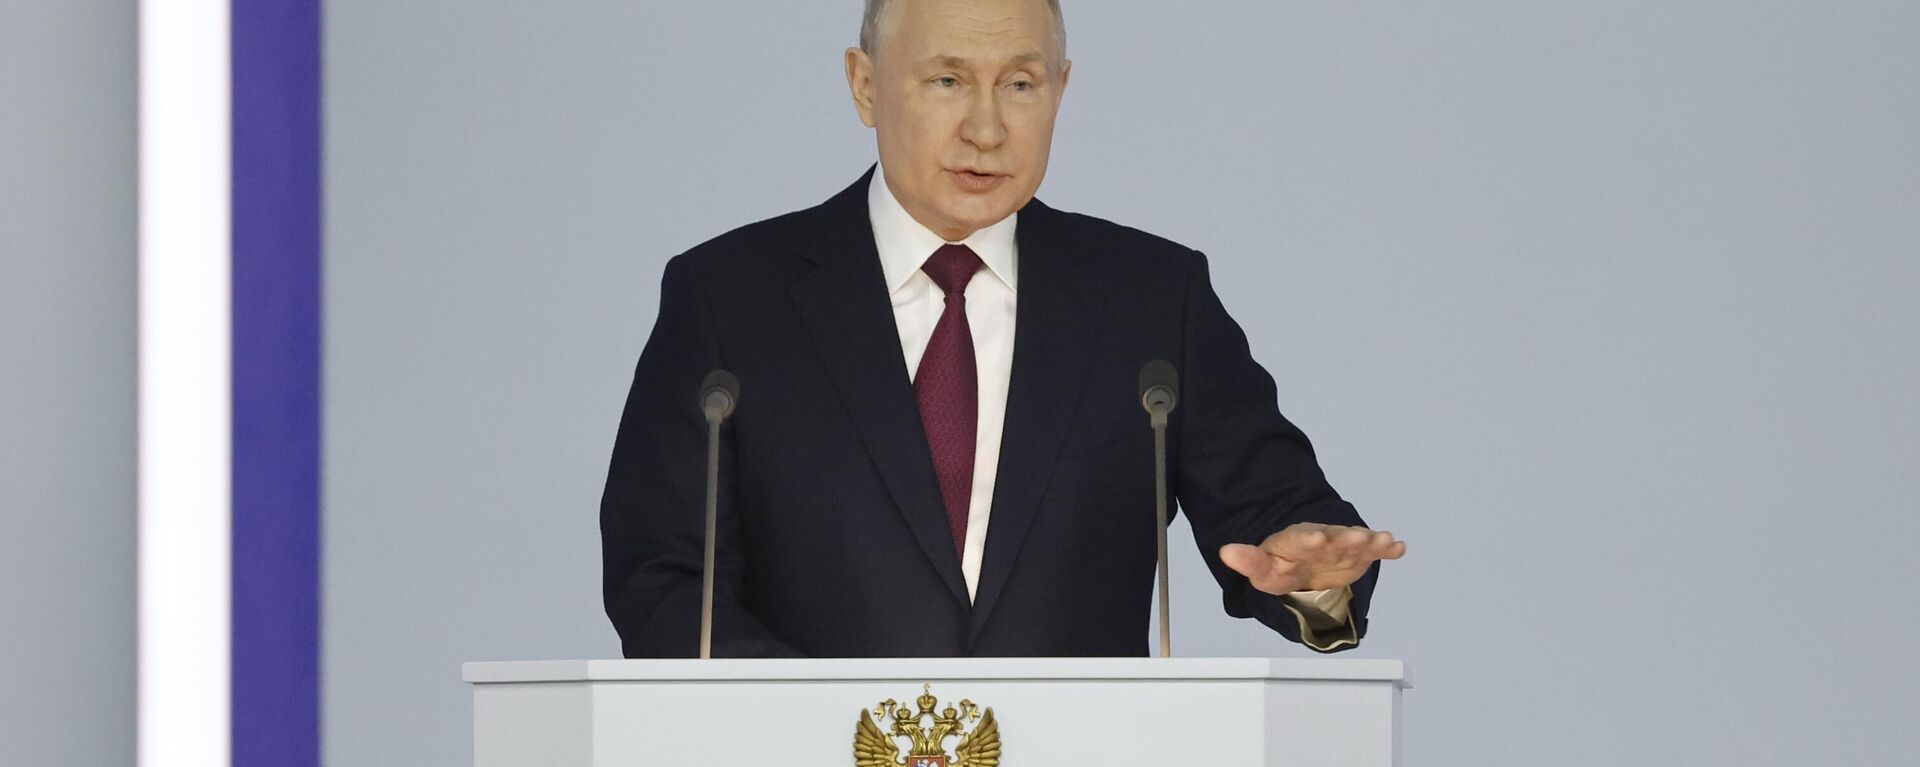 Vladimir Putin, presidente da Rússia, dá discurso à Assembleia Federal do país em 21 de fevereiro de 2023 - Sputnik Brasil, 1920, 21.02.2023